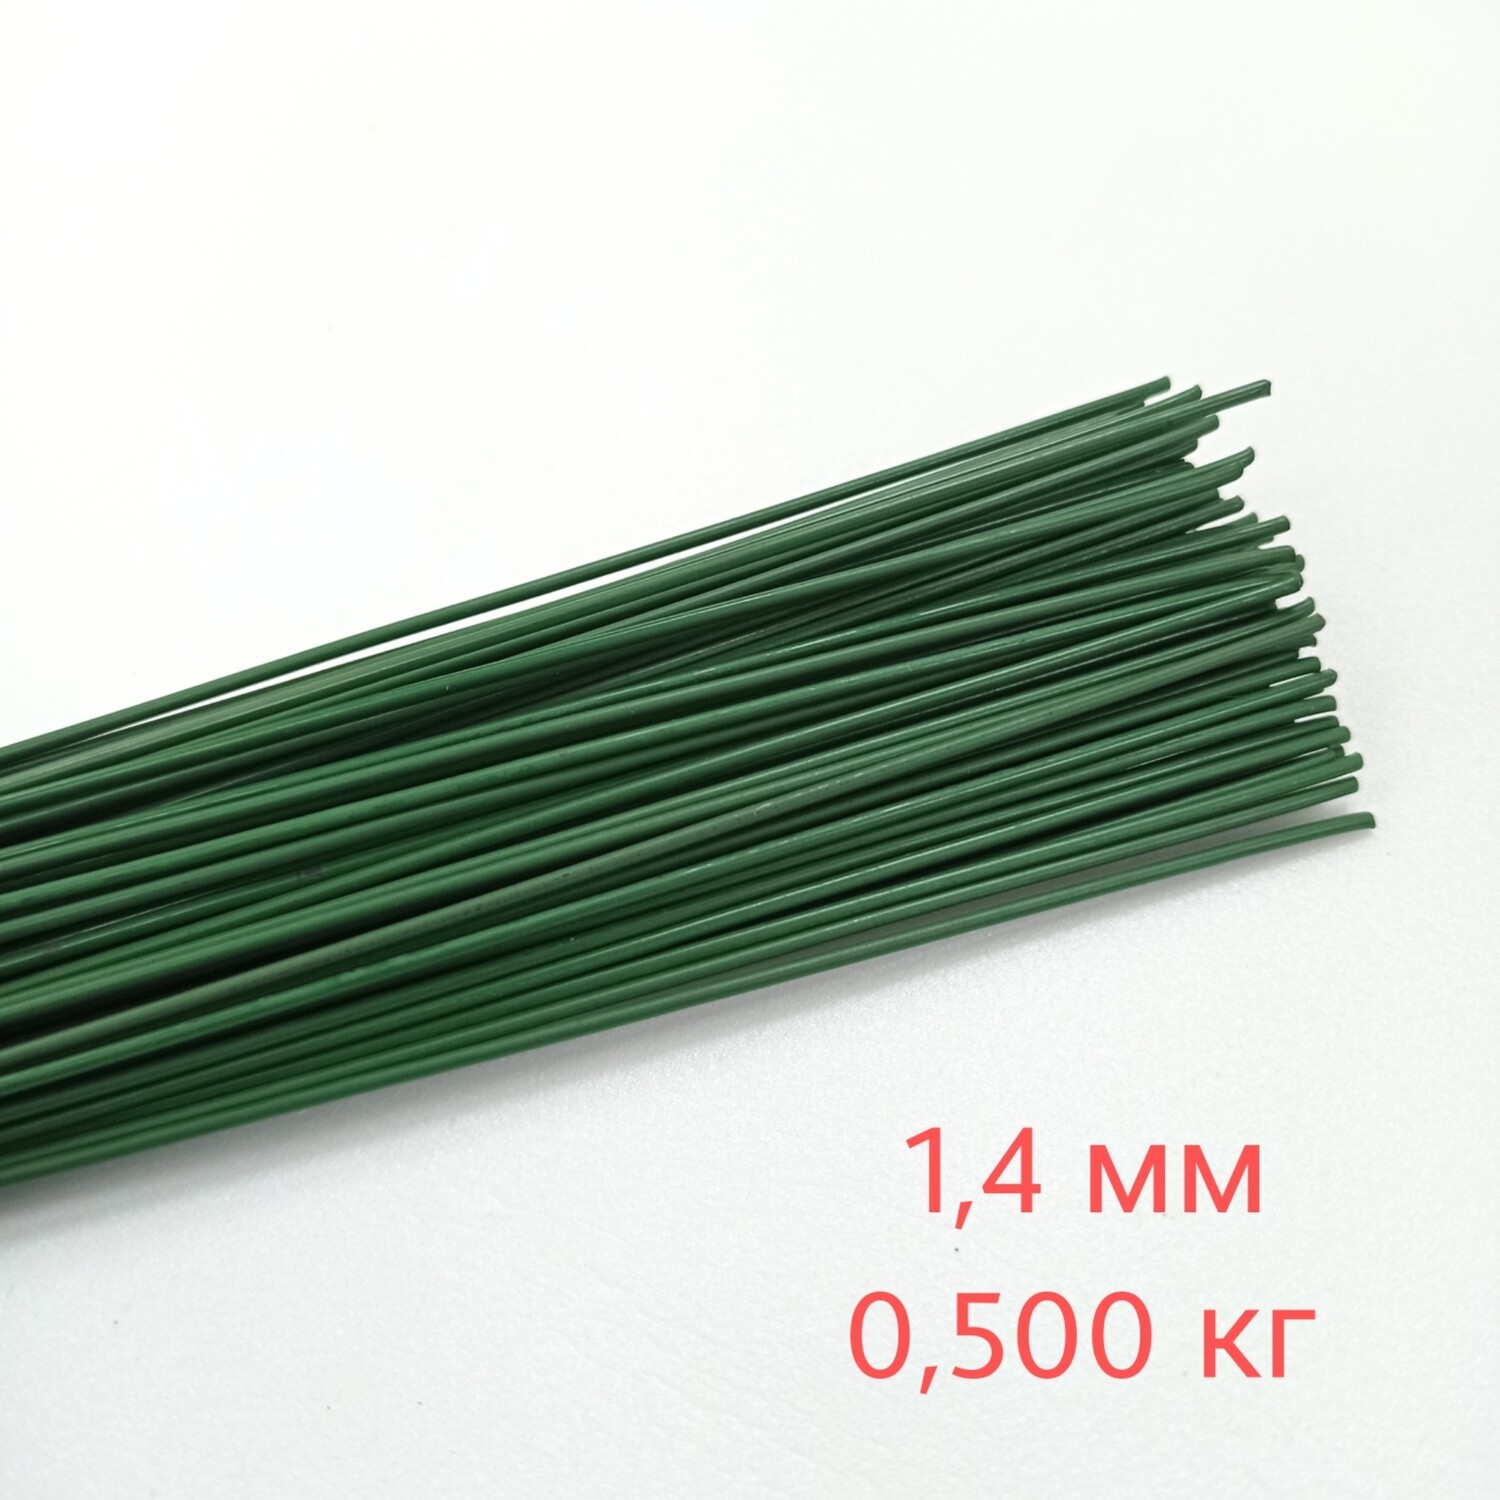 Зелёная проволока 1,4мм в бумажной оплетке, цена за 0,500кг